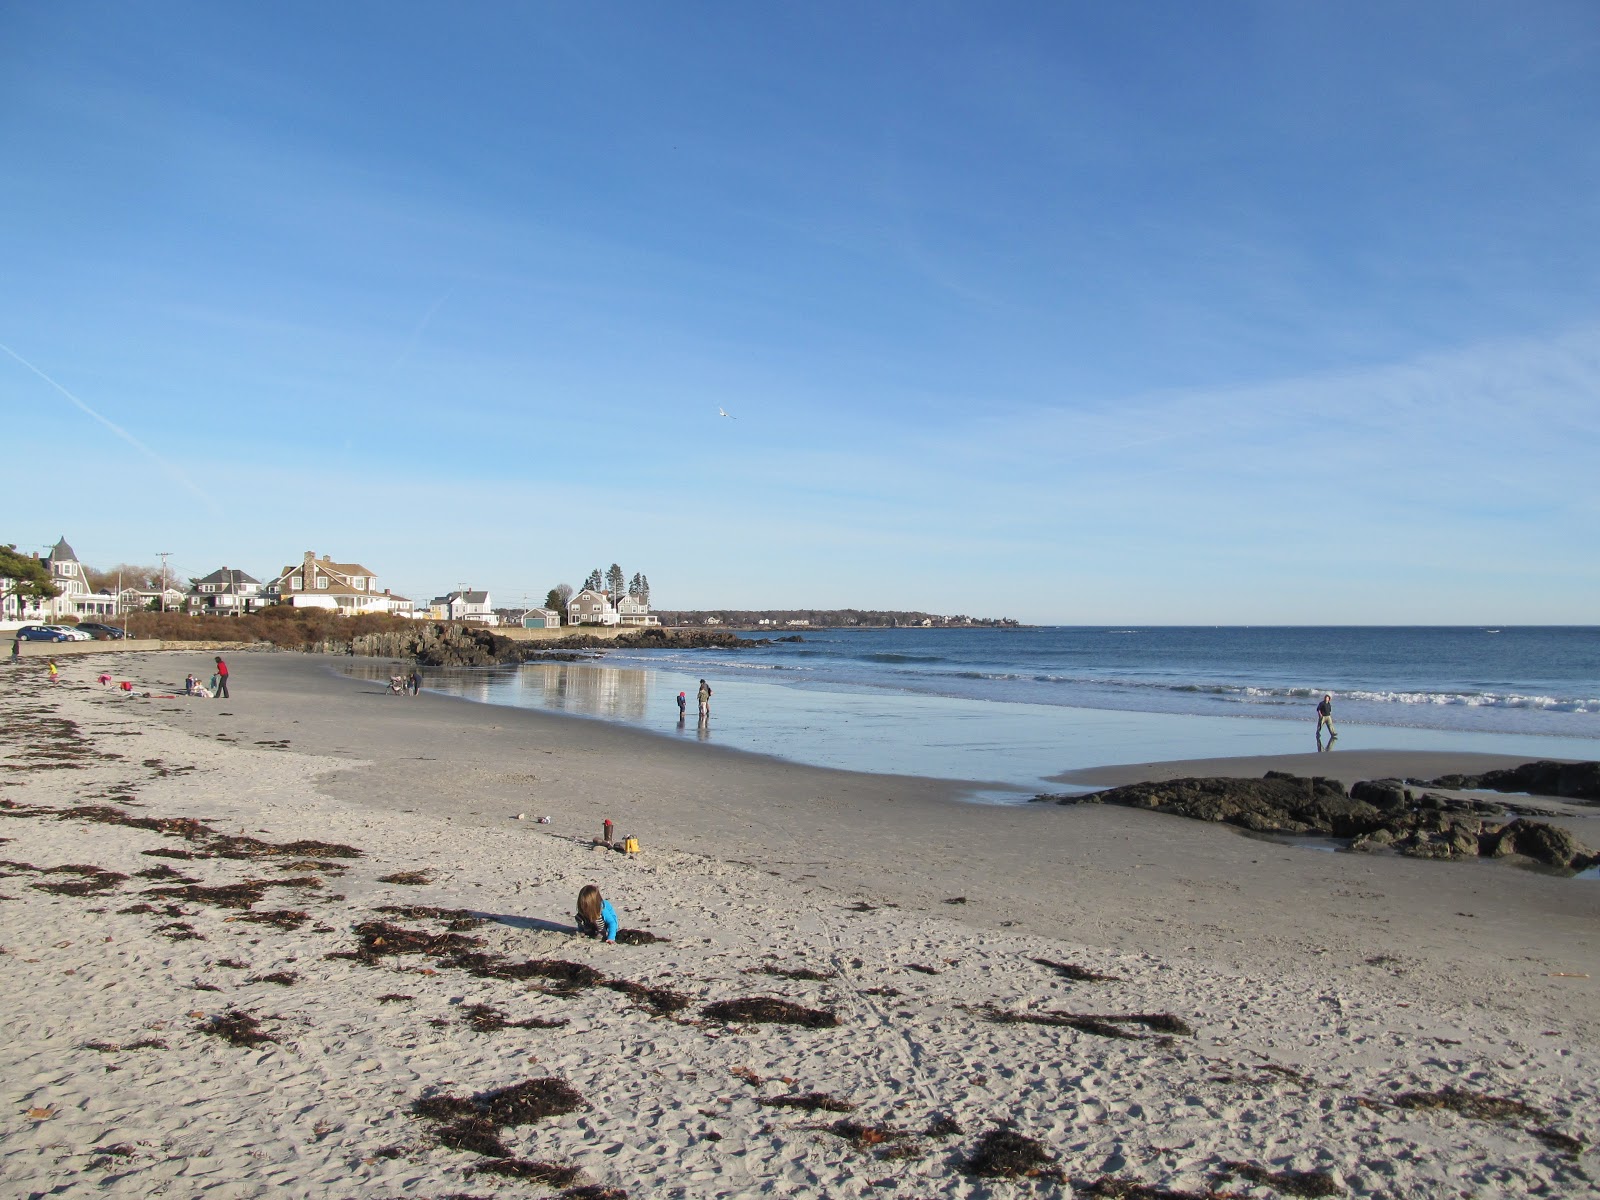 Fotografie cu Mother's beach cu o suprafață de nisip strălucitor